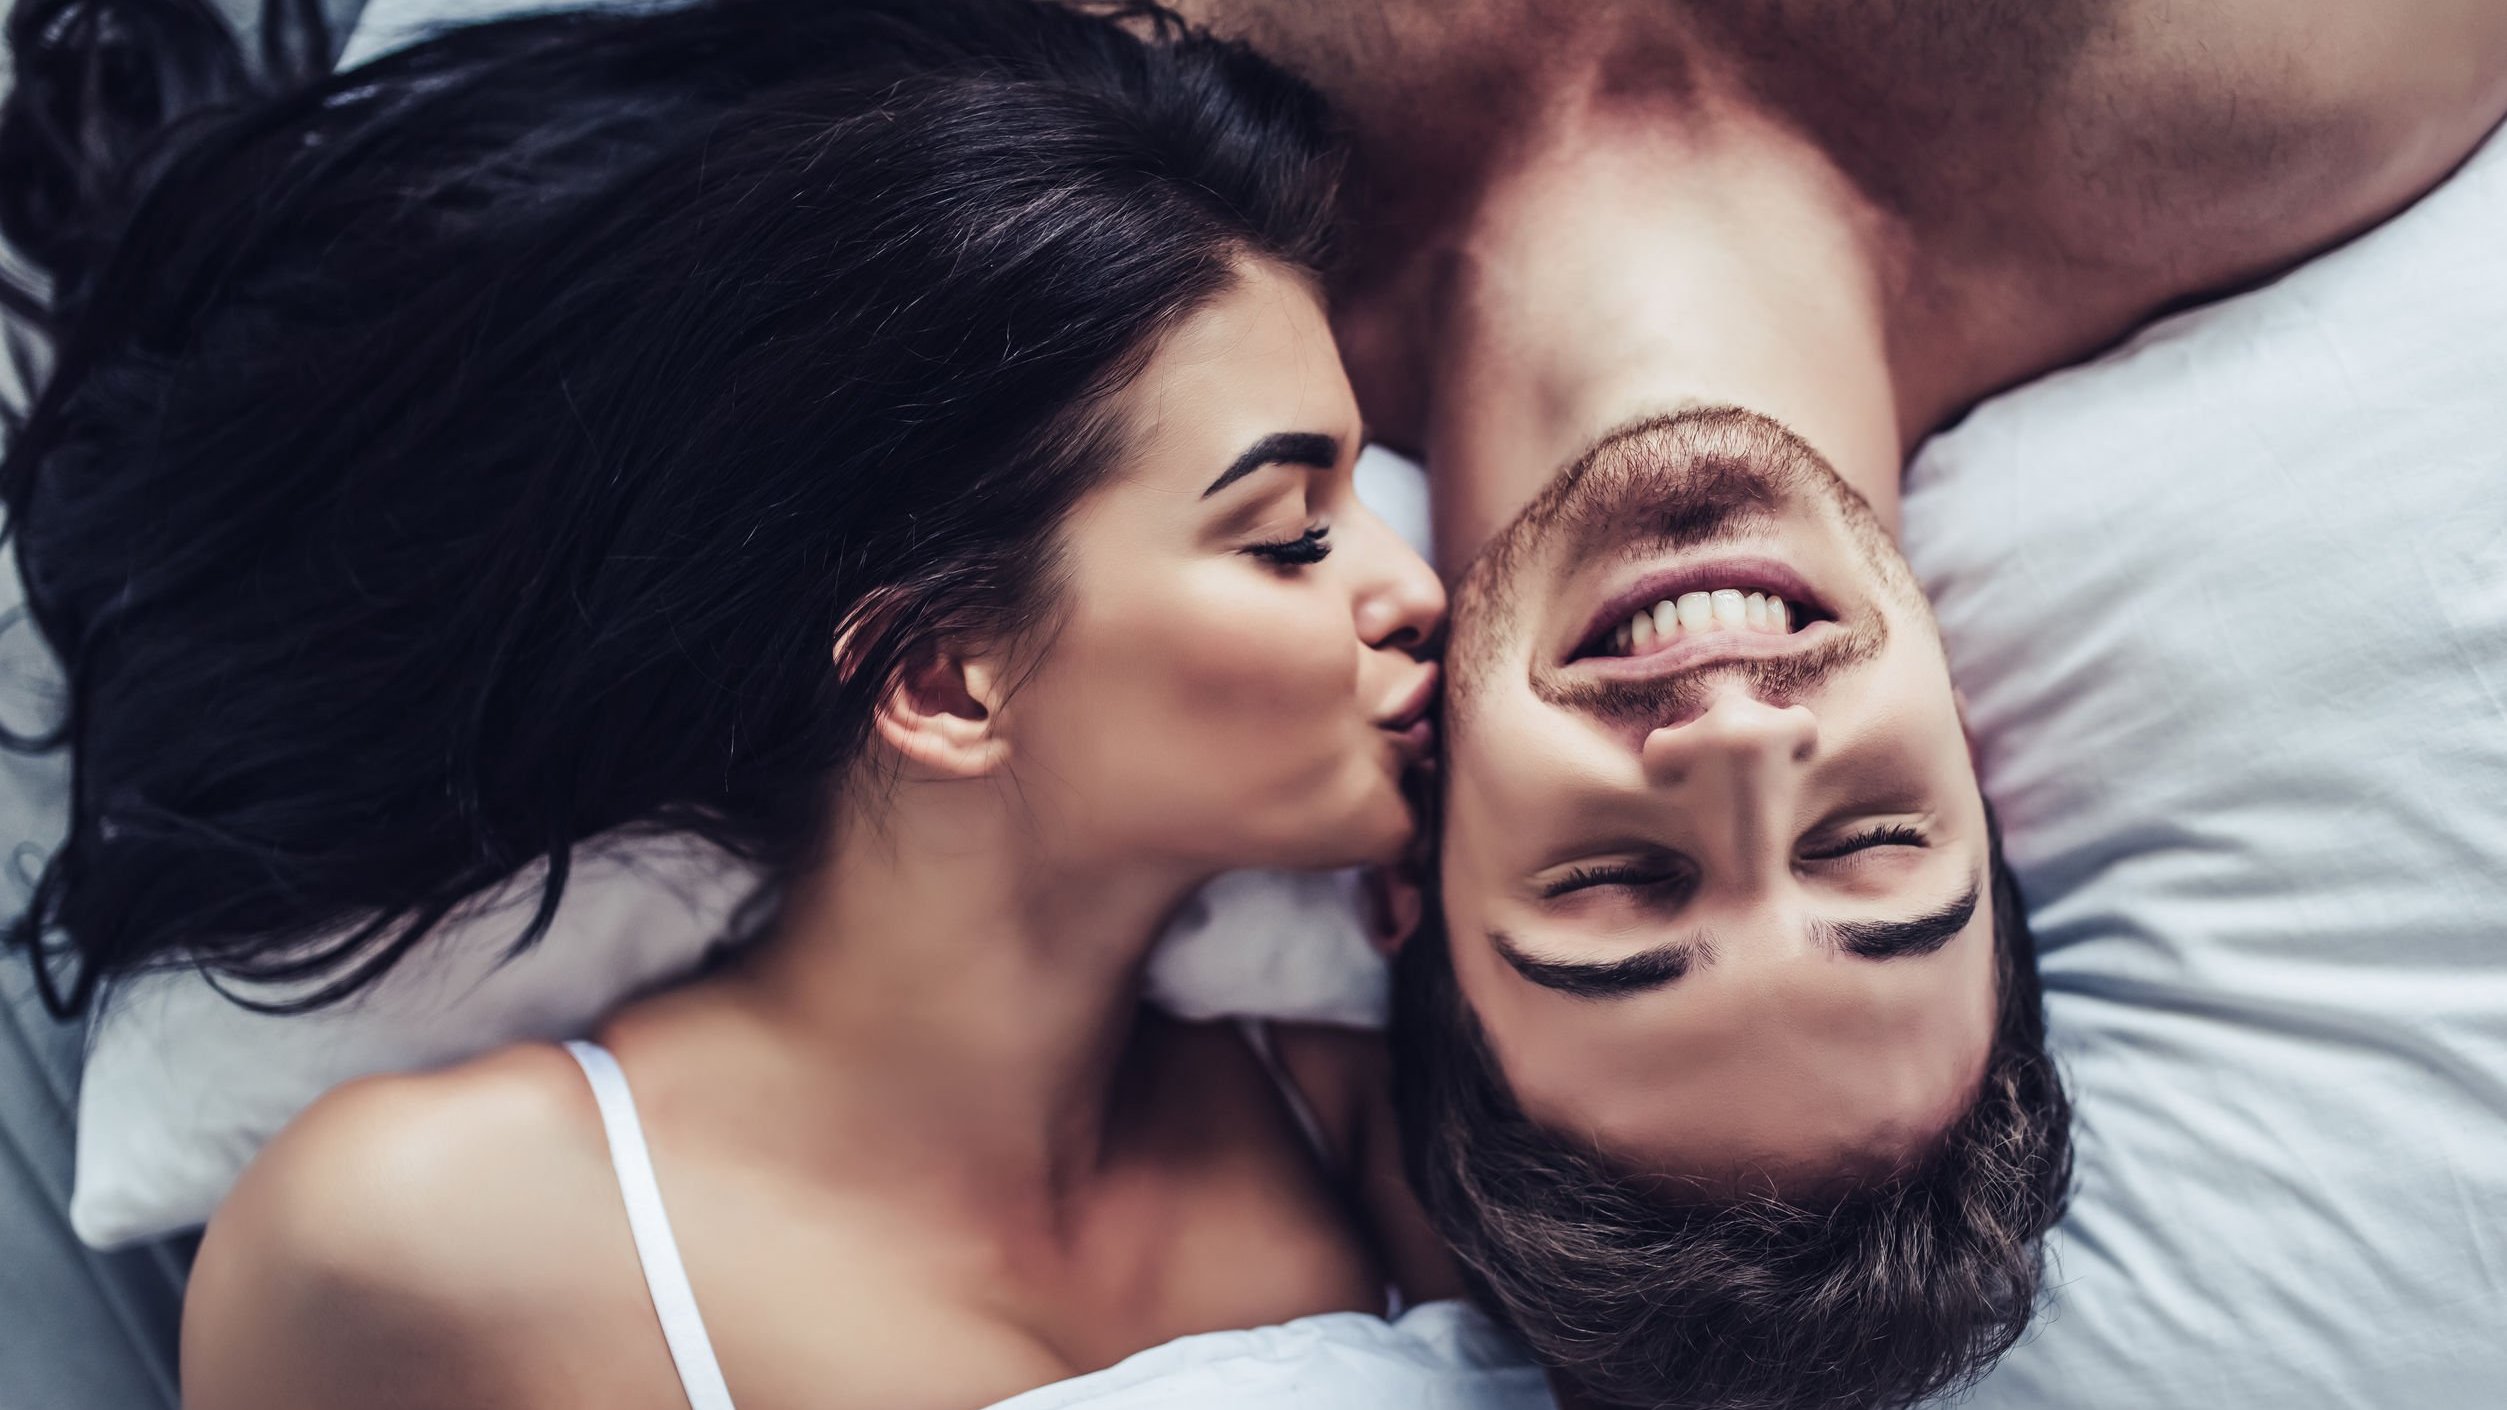 Mulher beija o rosto de um homem, os dois estão deitados em uma cama.